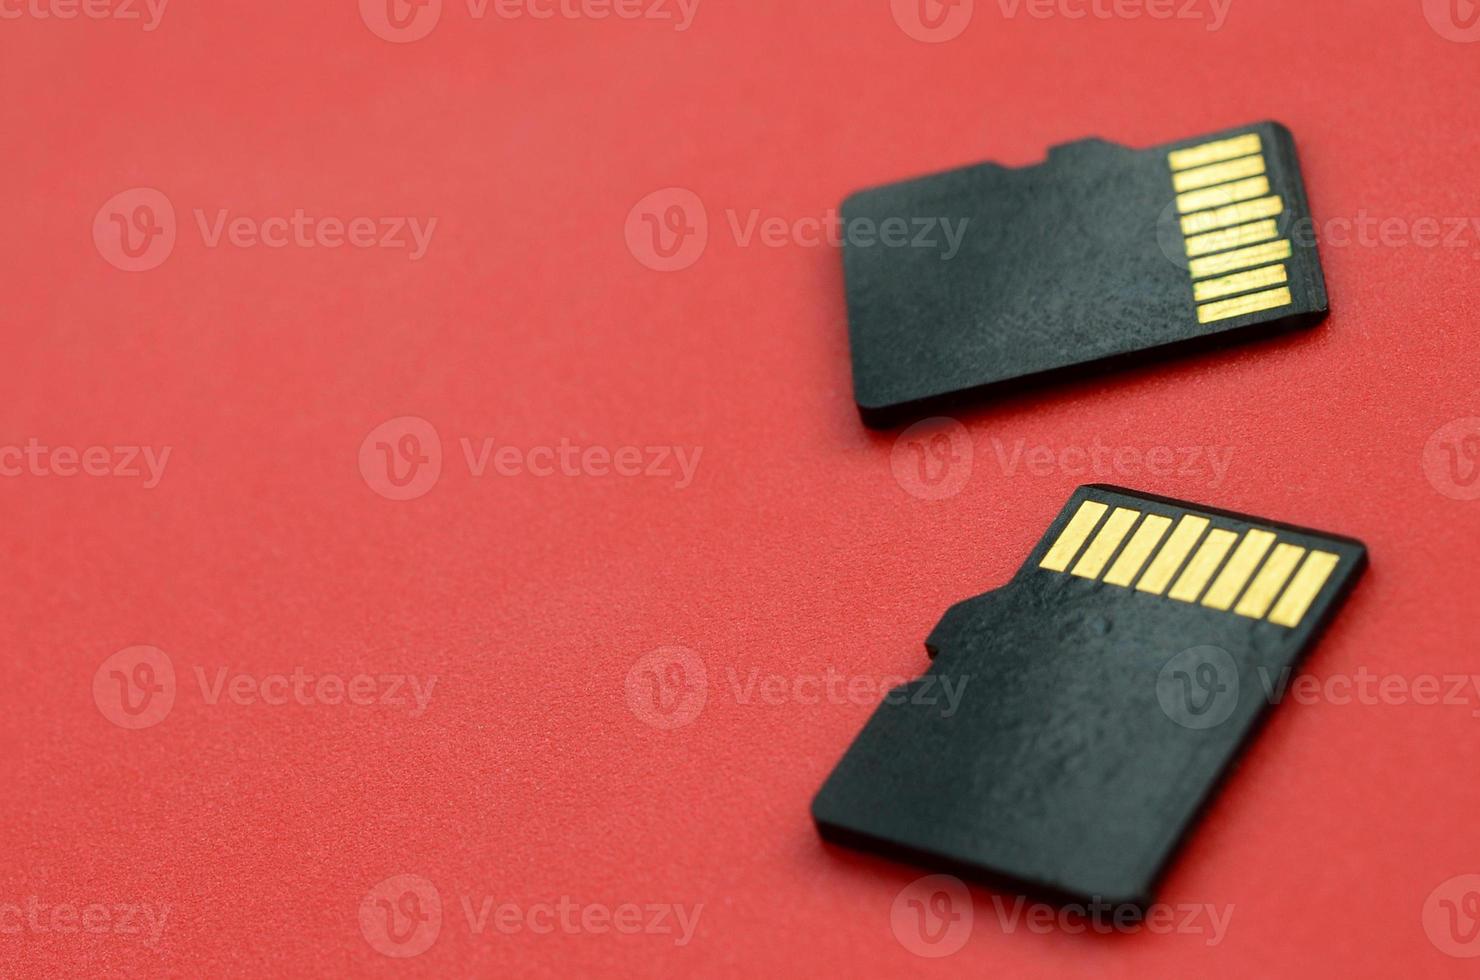 dos pequeñas tarjetas de memoria micro sd se encuentran sobre un fondo rojo. un pequeño y compacto almacén de datos e información foto